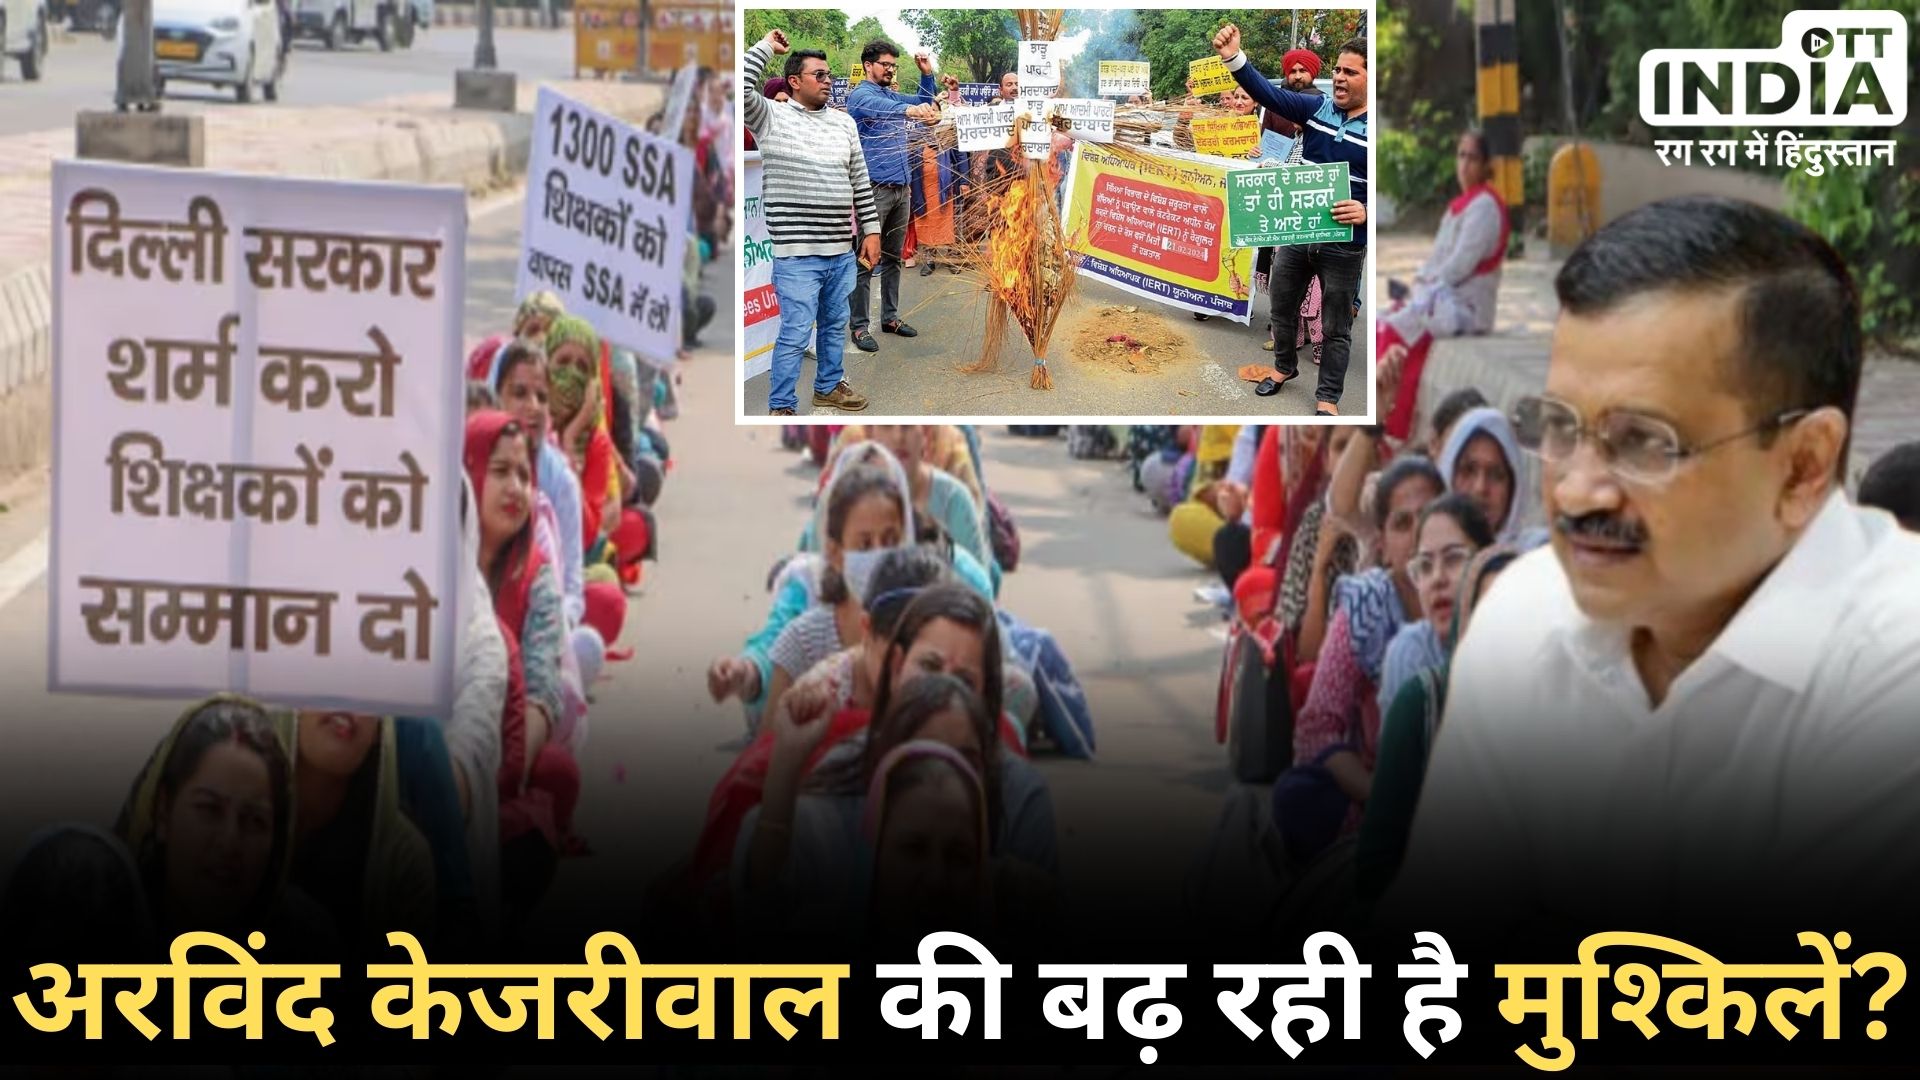 DELHI SSA TEACHERS PROTEST